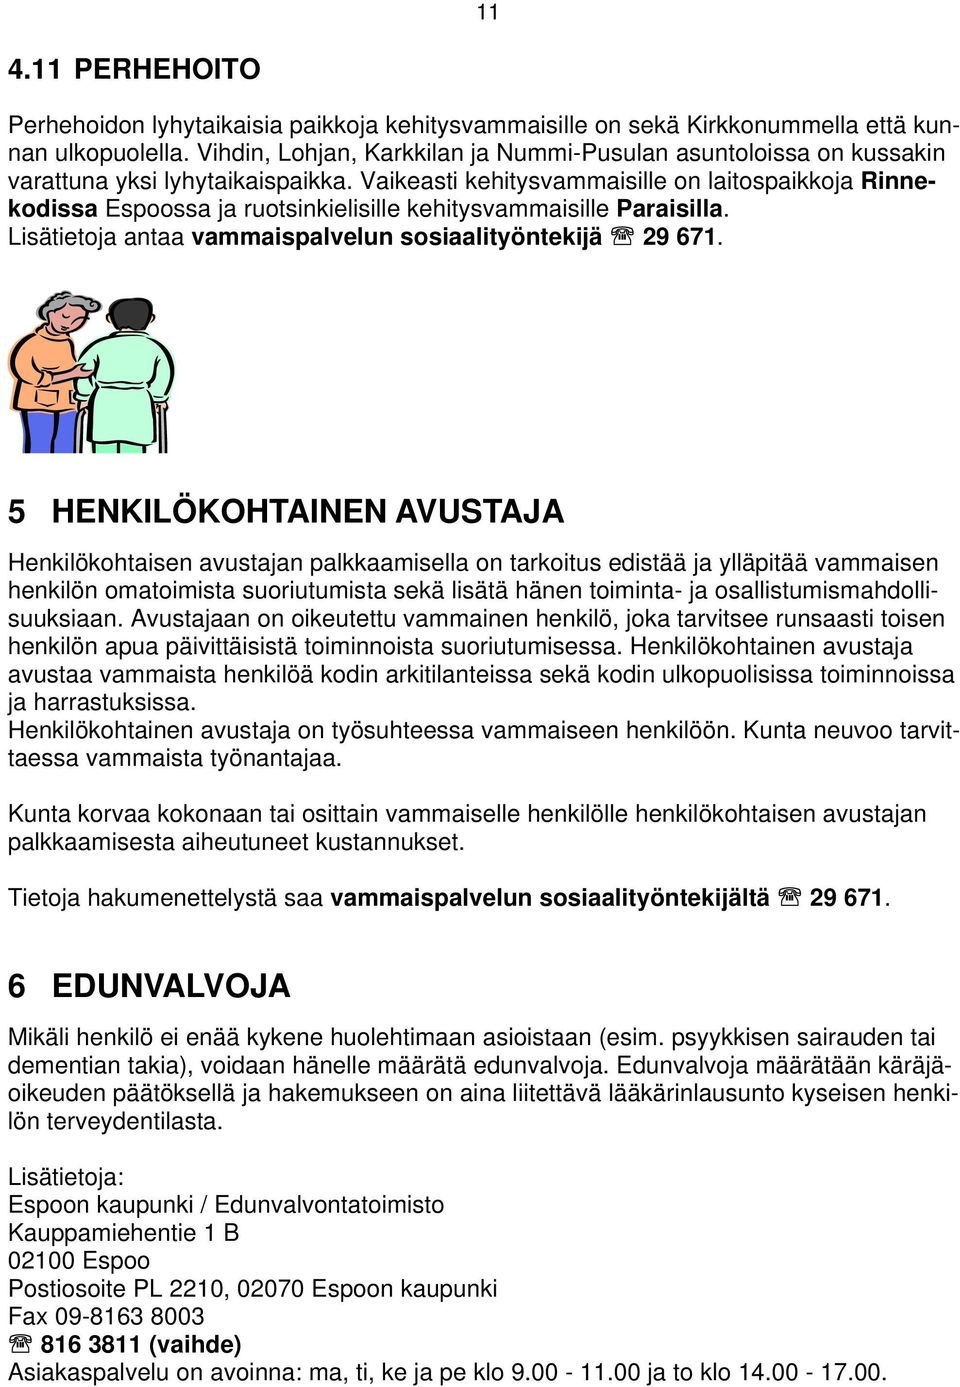 Vaikeasti kehitysvammaisille on laitospaikkoja Rinnekodissa Espoossa ja ruotsinkielisille kehitysvammaisille Paraisilla. Lisätietoja antaa vammaispalvelun sosiaalityöntekijä 29 671.